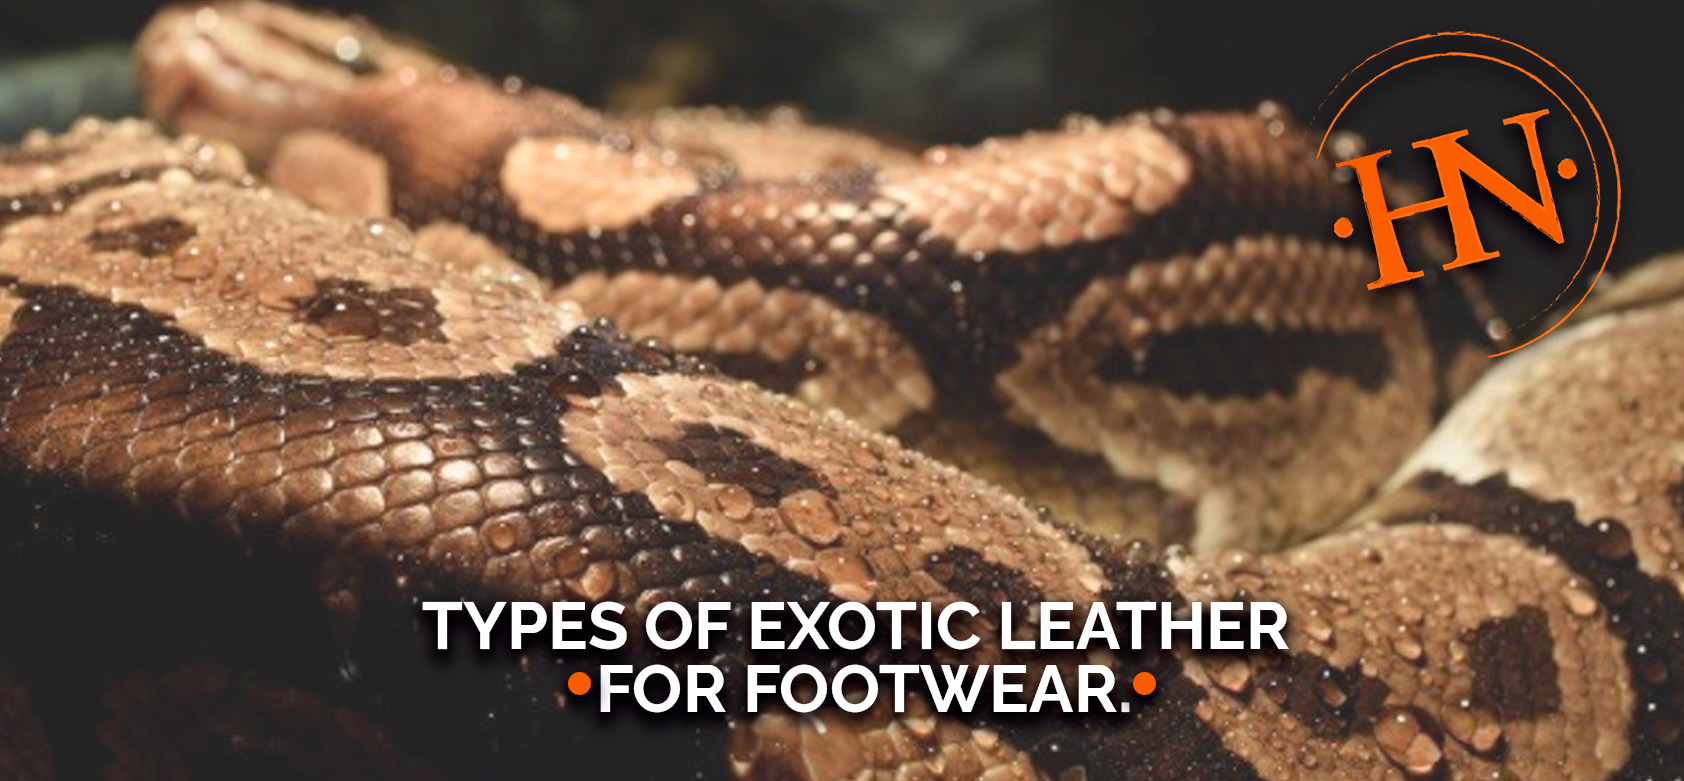 Types of Exotic Leather for Footwear. La horma de tu negocio